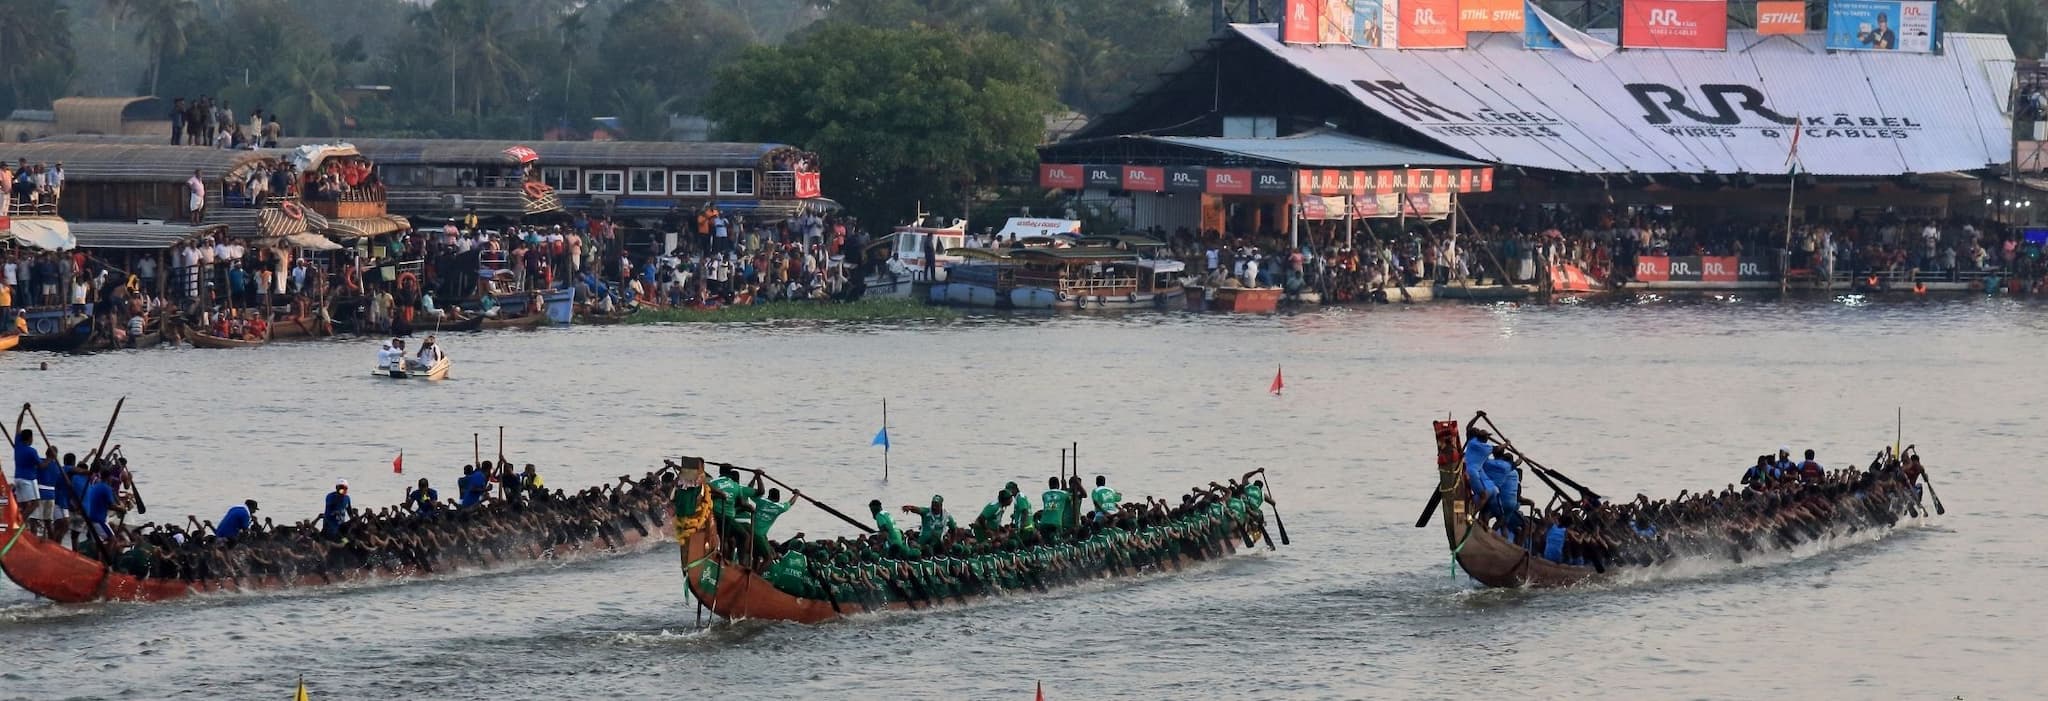 Nehru Trophy Boat Race - Kerala